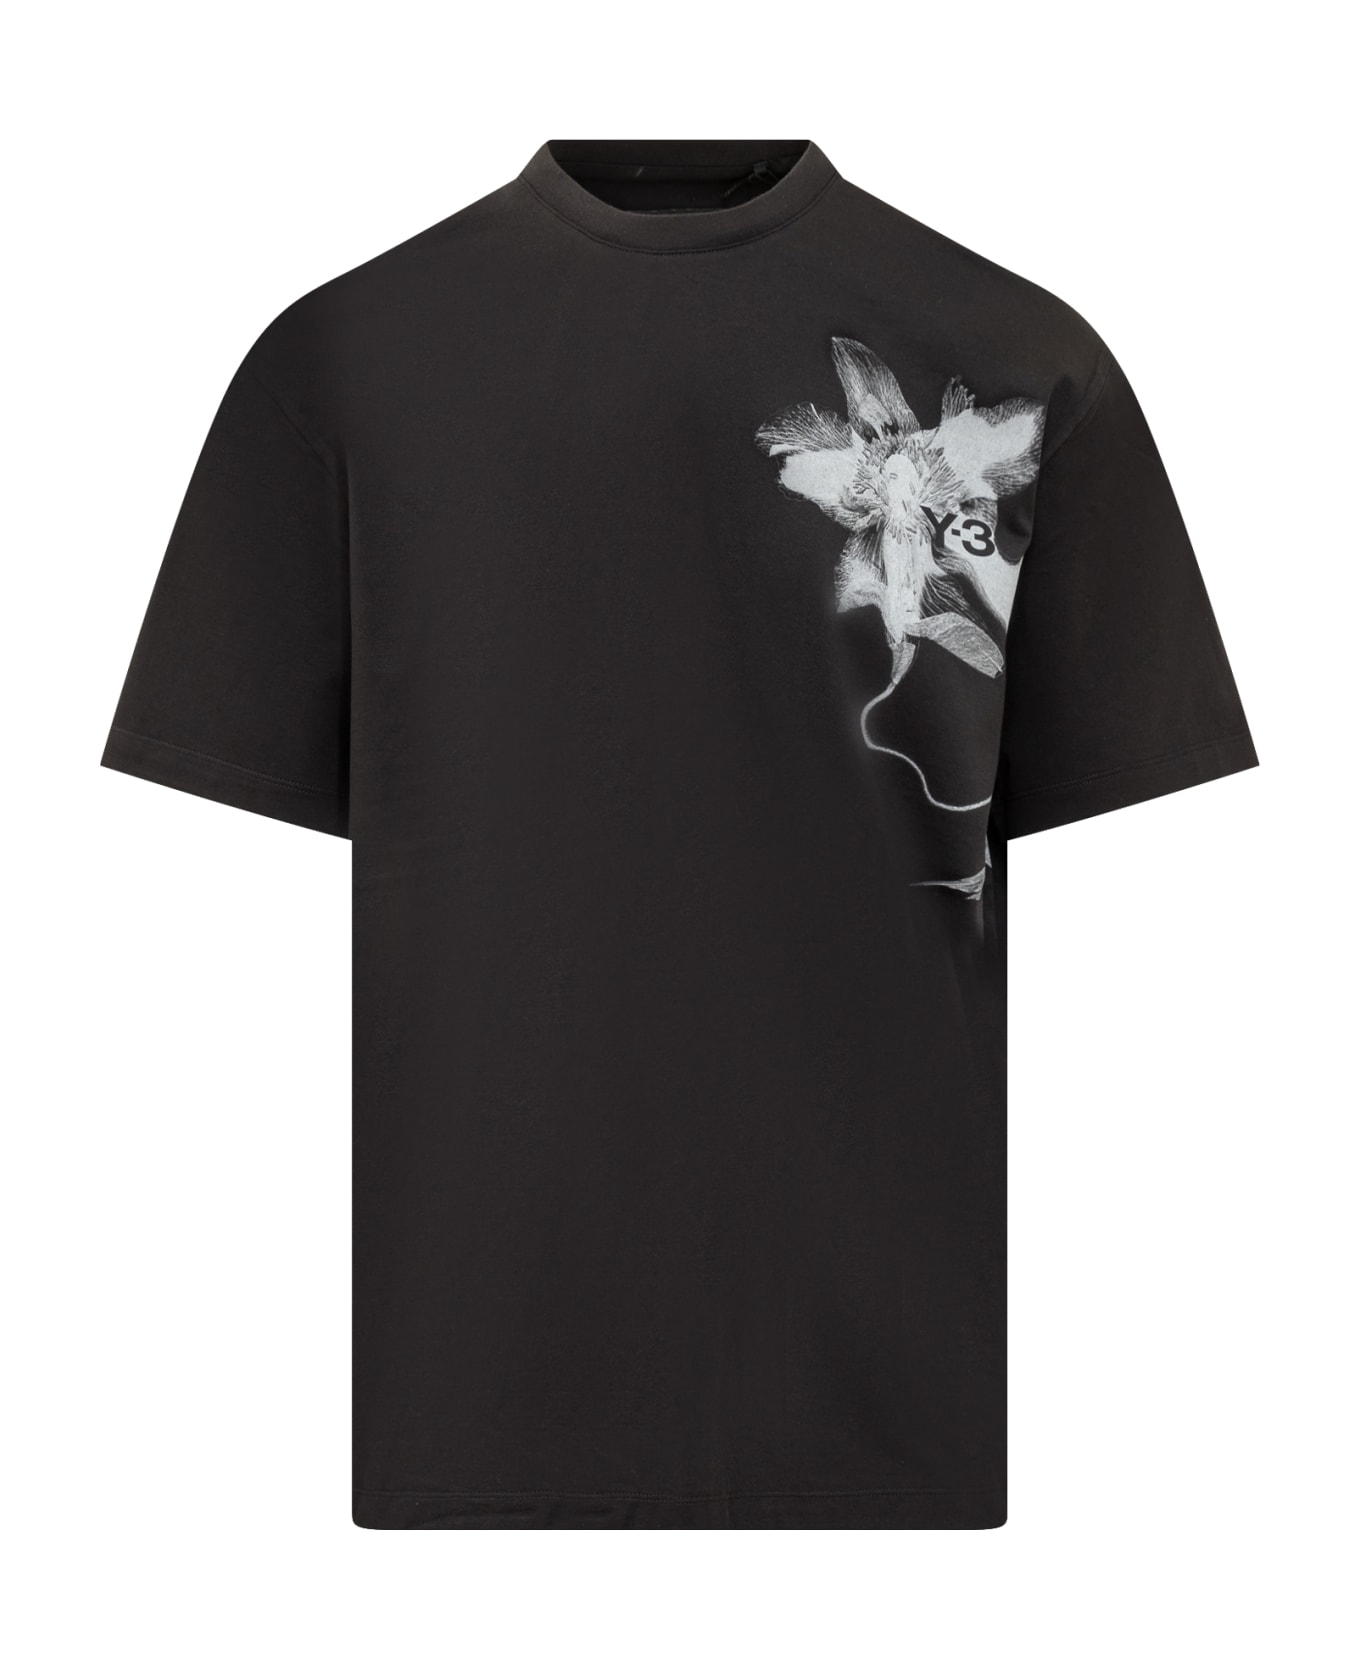 Y-3 Gfx T-shirt - BLACK